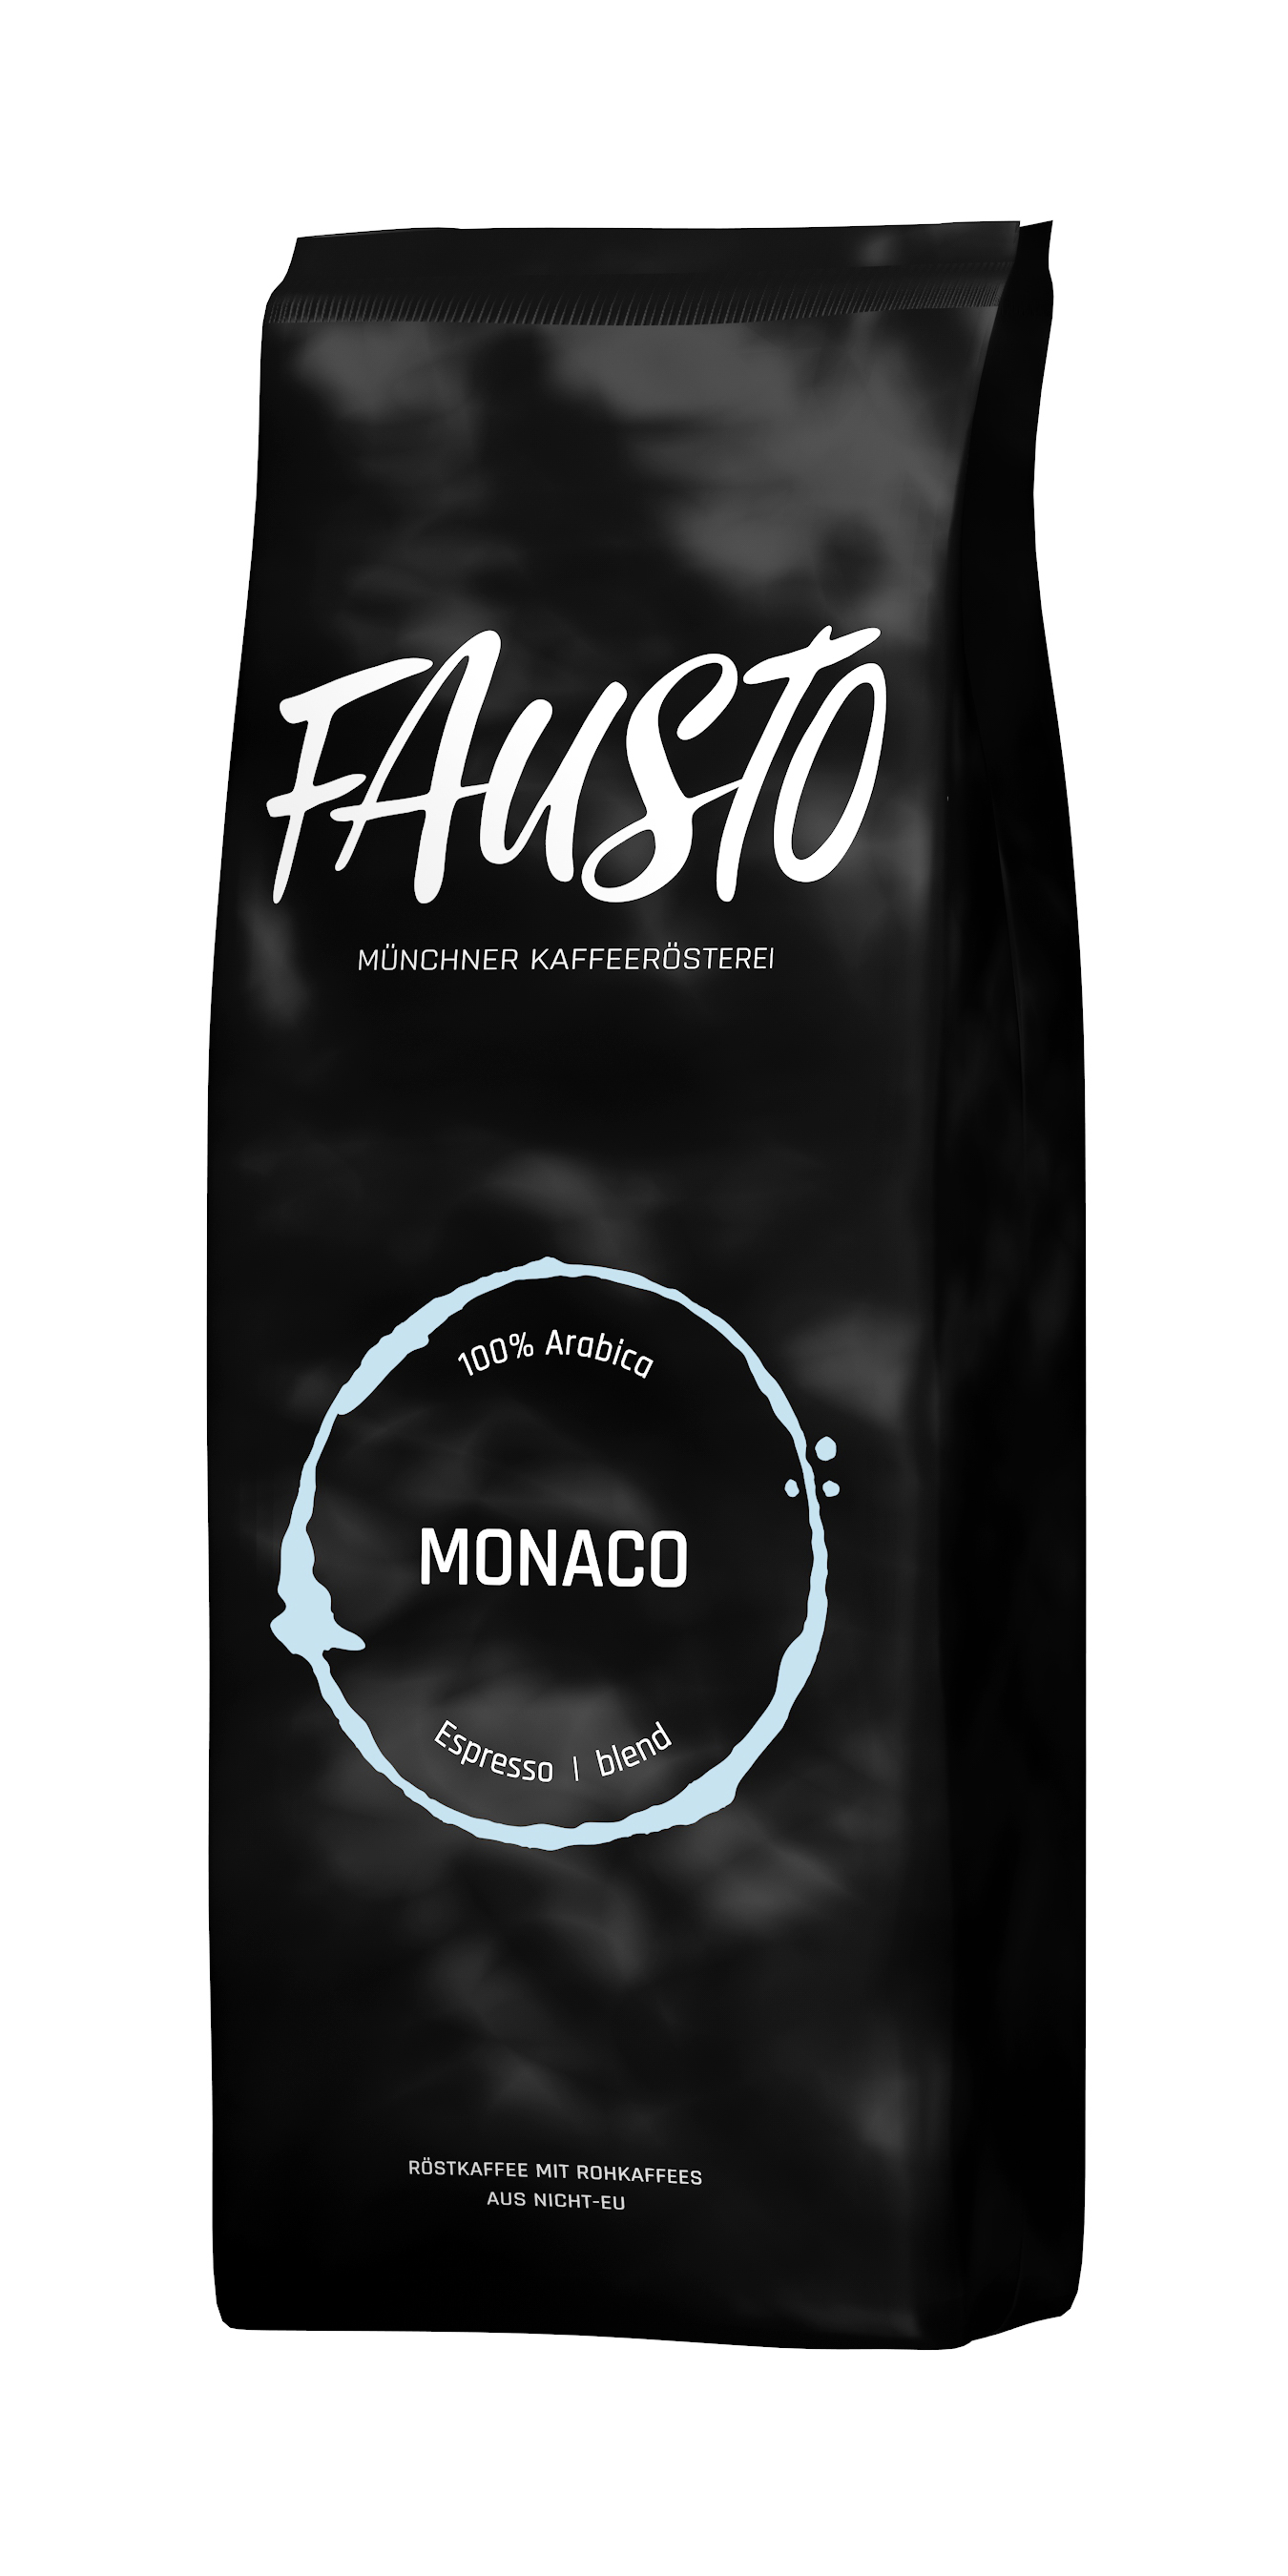 Espresso Monaco